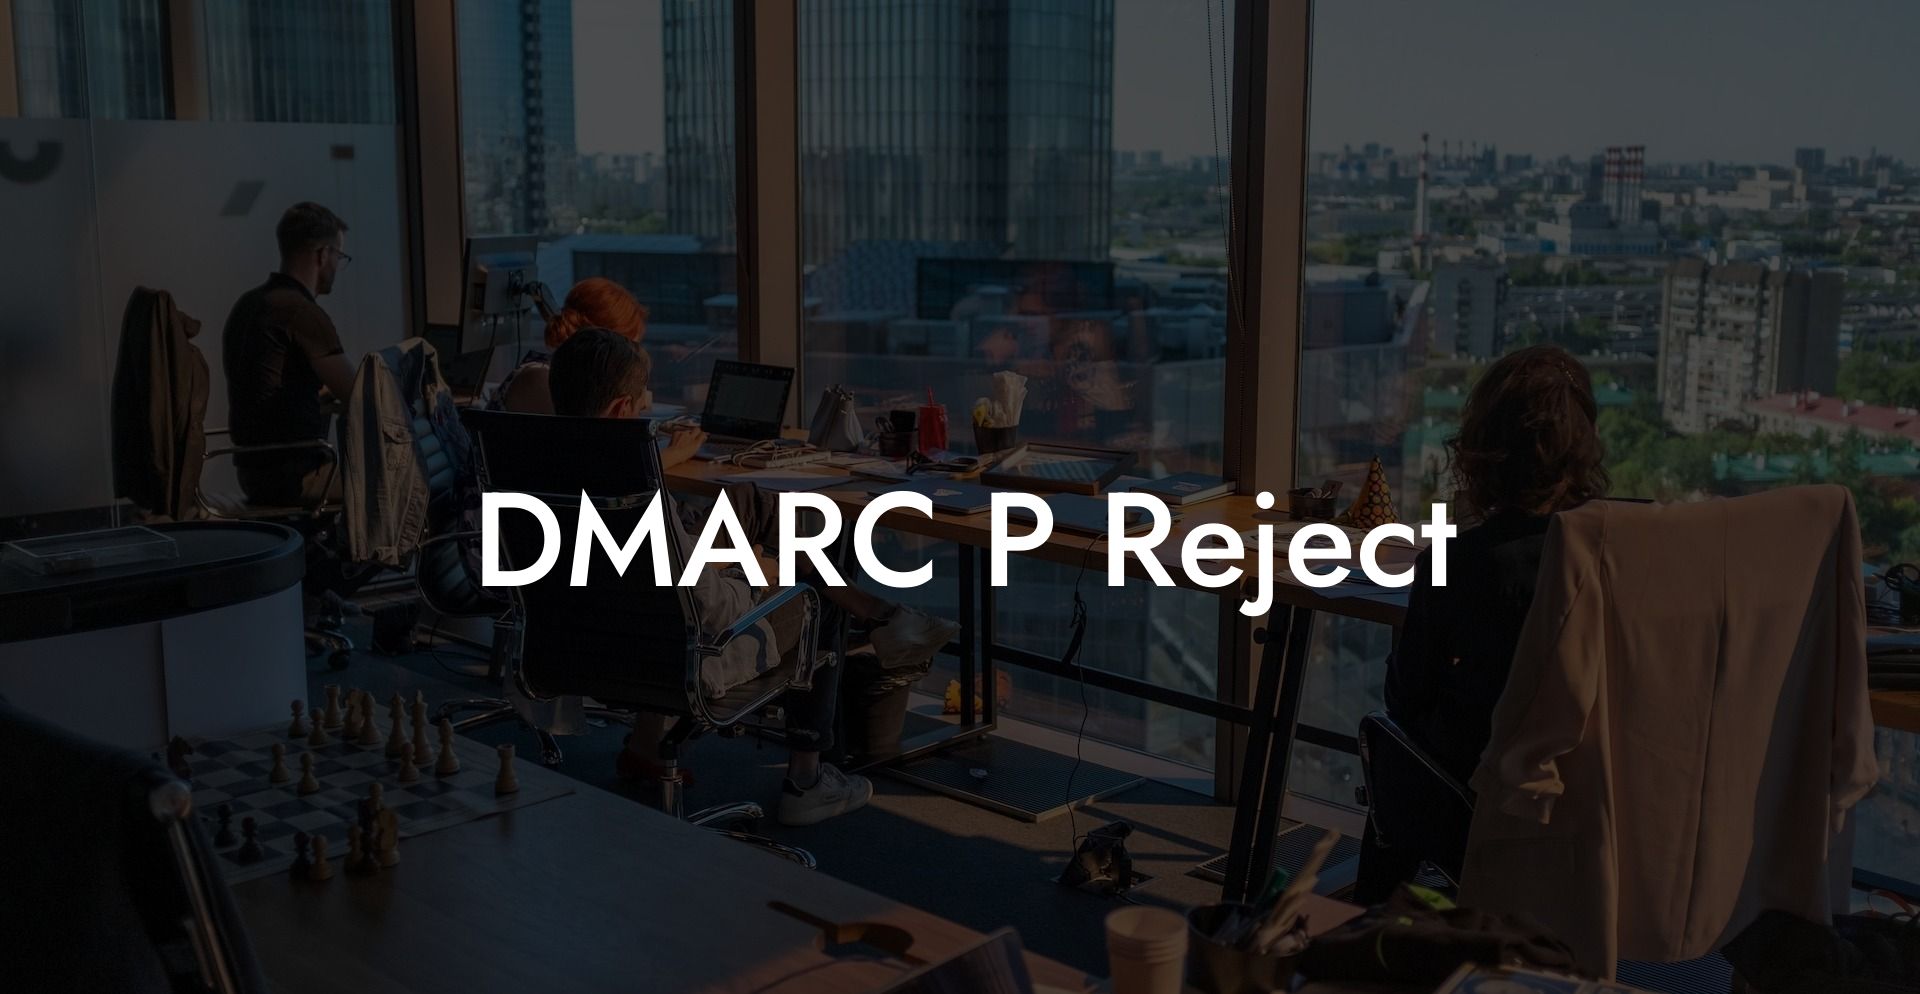 DMARC P Reject